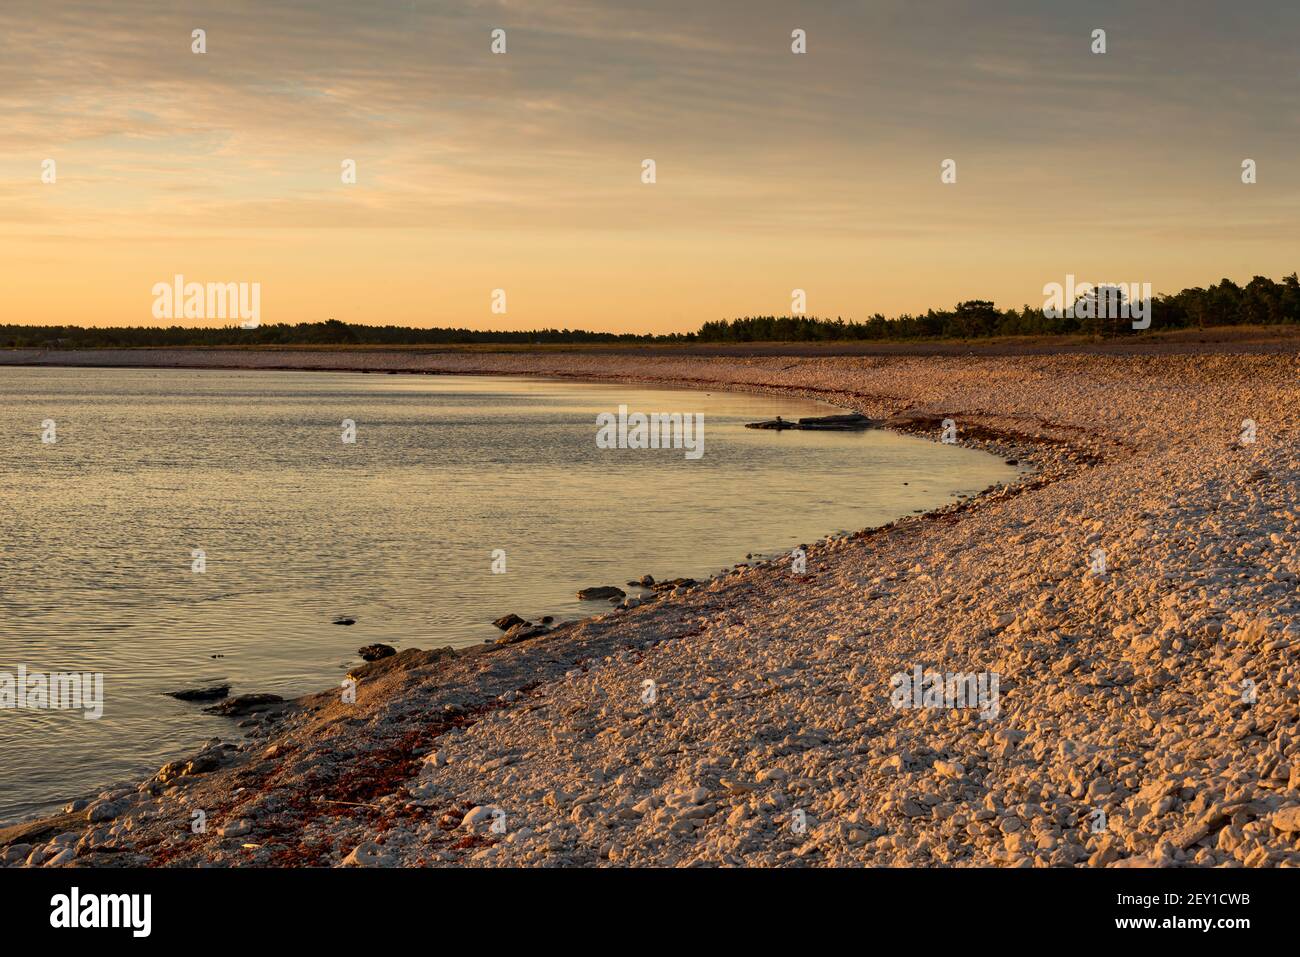 Dawn over the Baltic sea Stock Photo